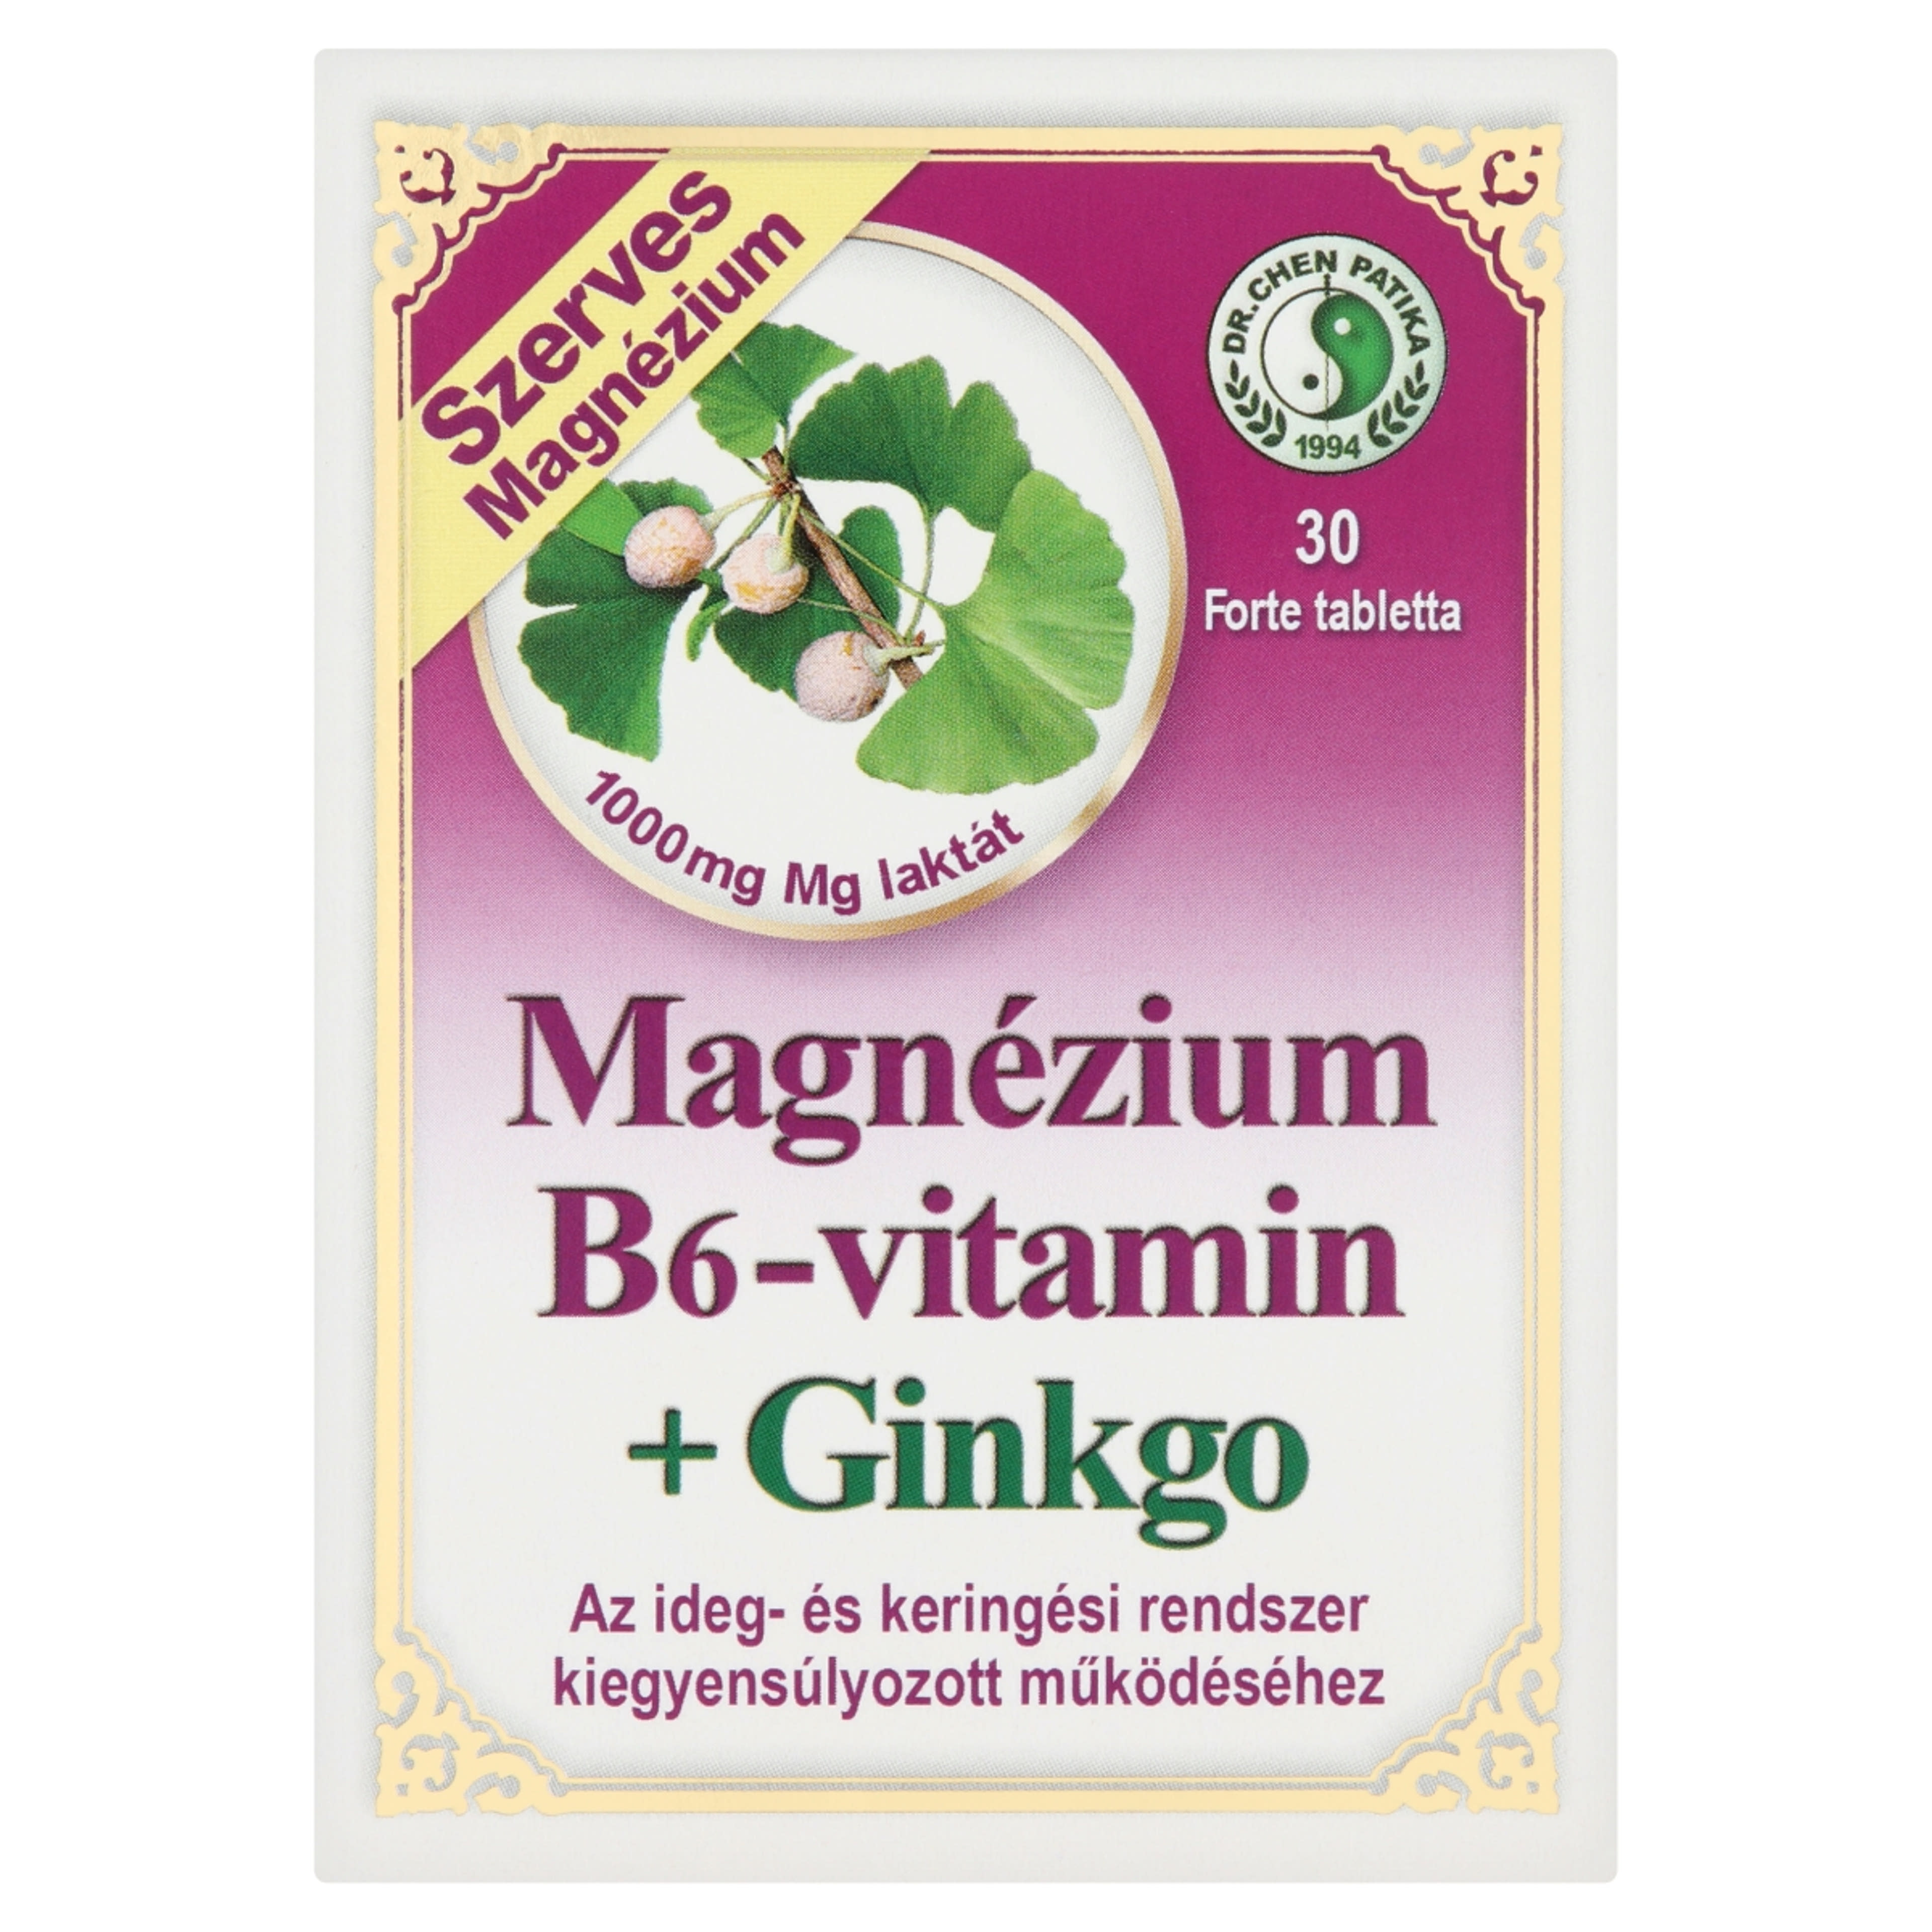 Dr.Chen Patika Magnézium B6-Vitamin+ Ginkgo Forte Tabletta - 30 db